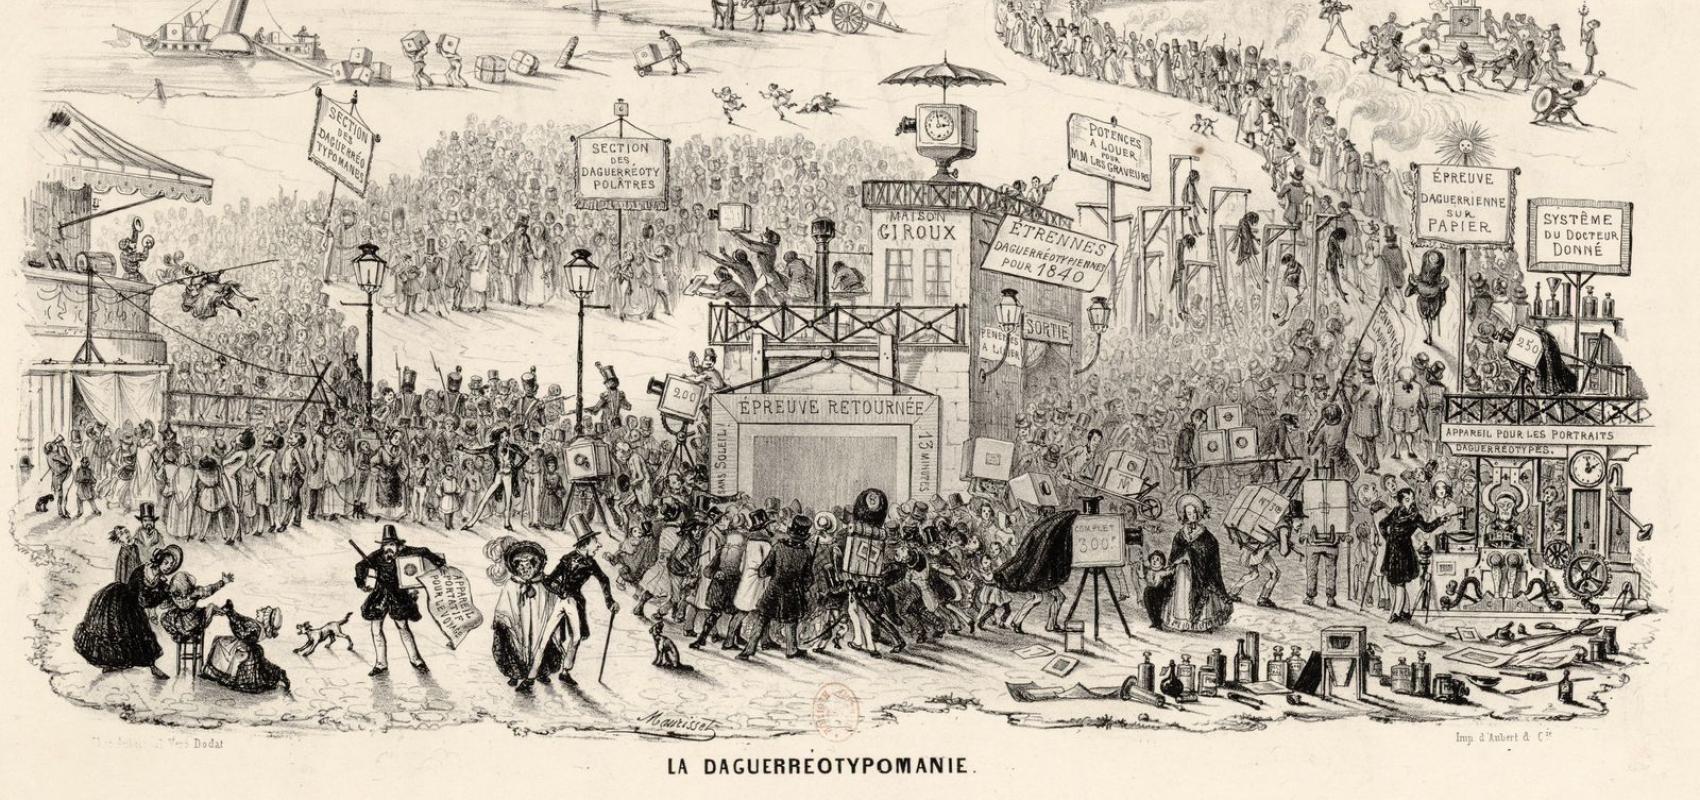 Théodore Maurisset, « La Daguerréotypomanie », dans « La Caricature » n°58 - 8 décembre 1839 - BnF, département des Estampes et de la photographie